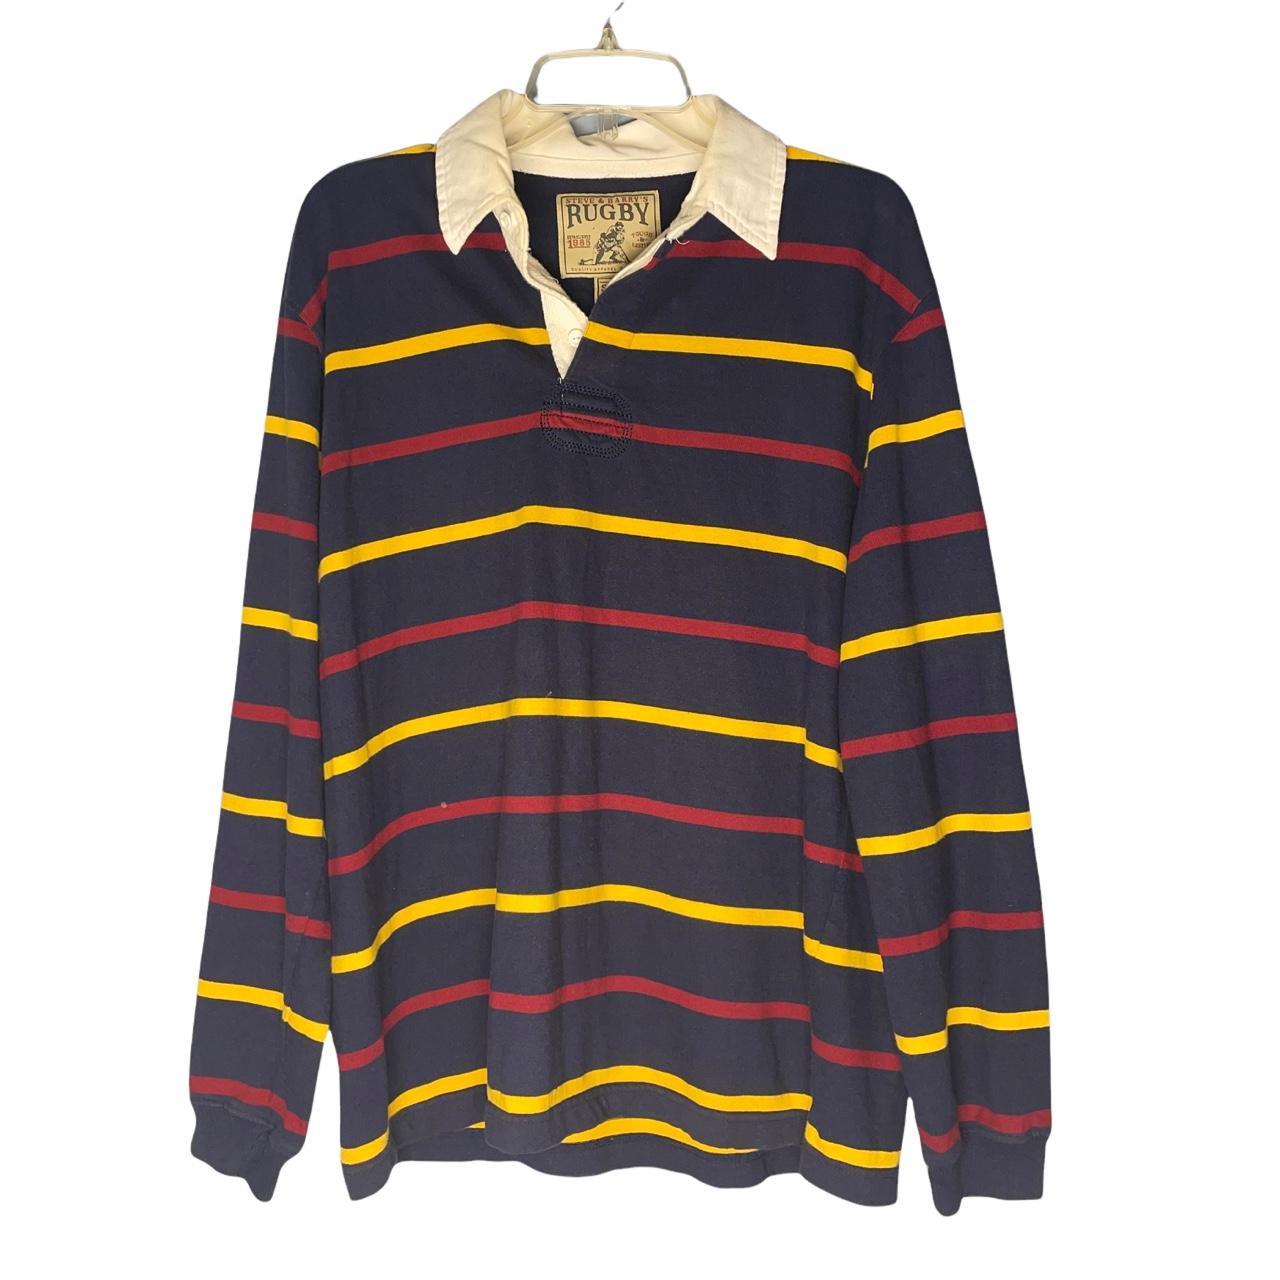 Vintage Steve & Barry’s Rugby Striped Dress Shirt... - Depop